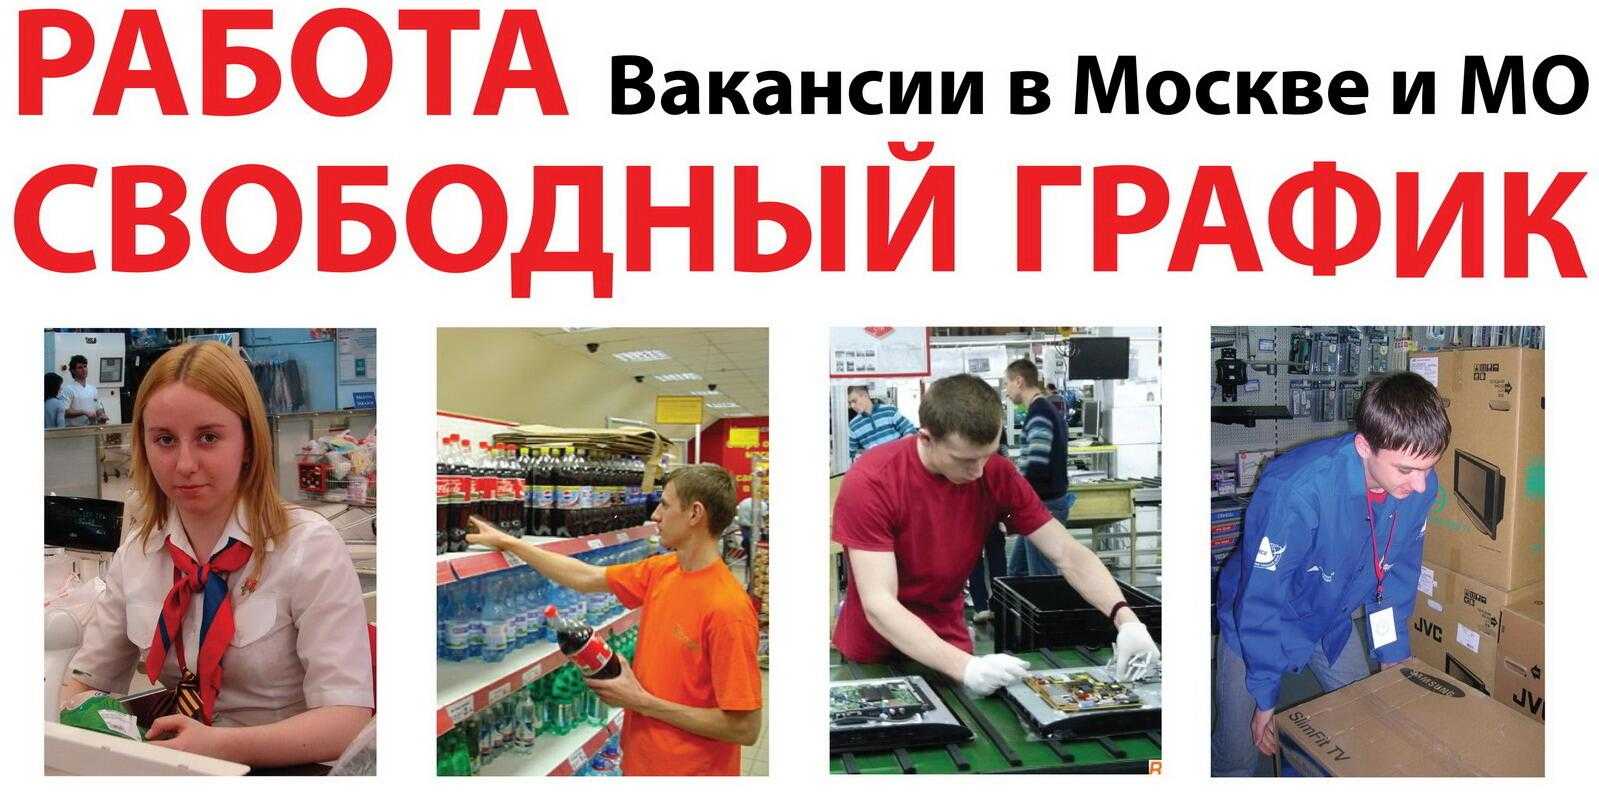 найти работу в москве